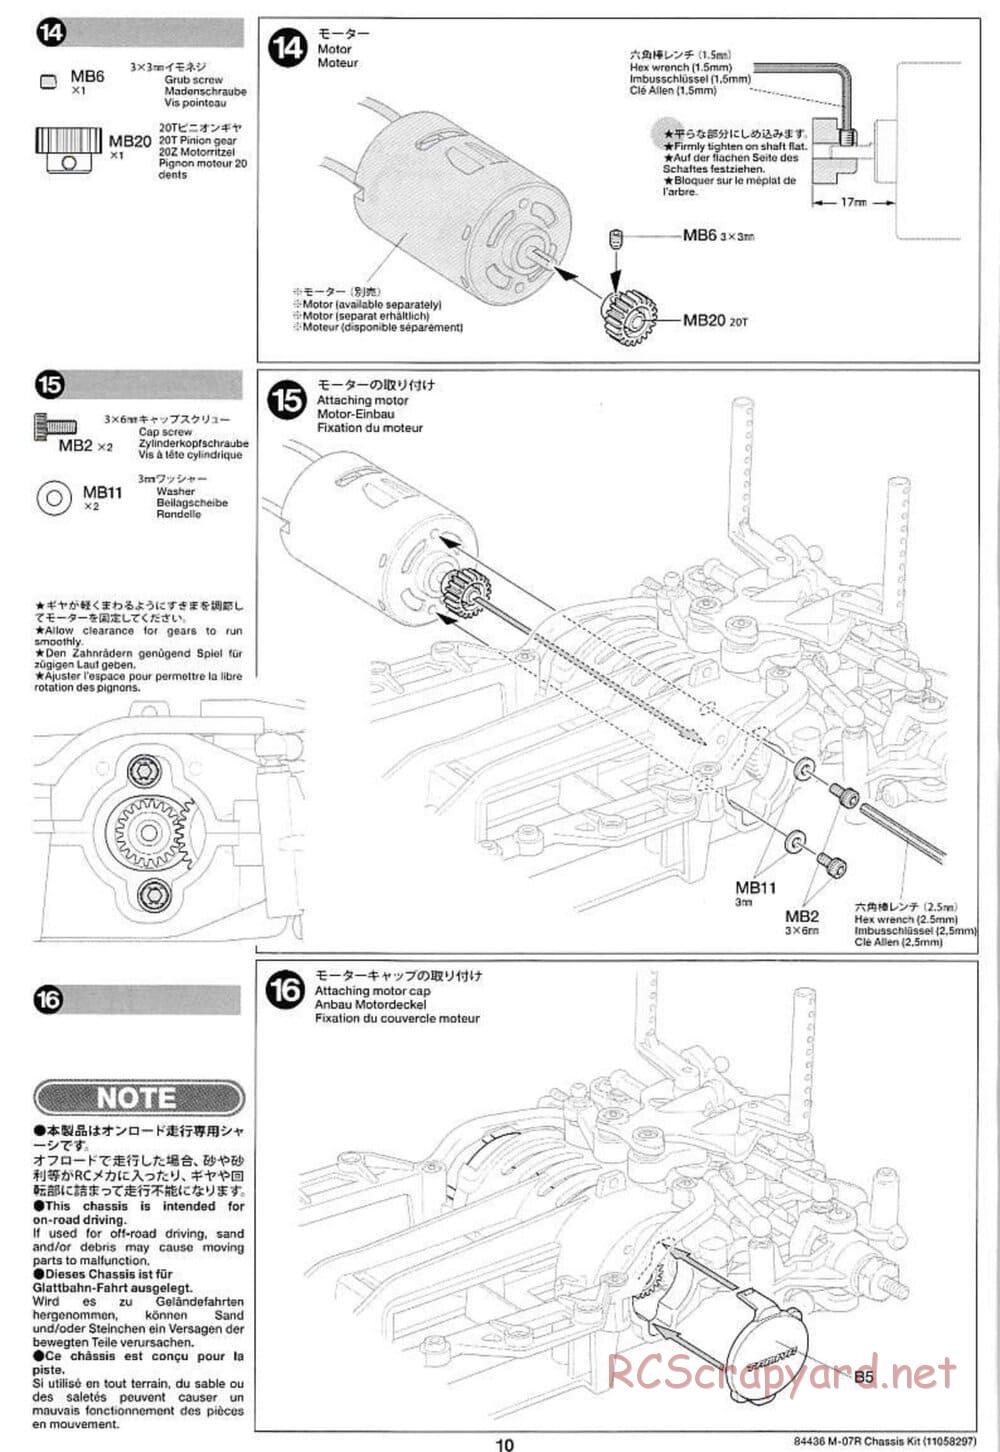 Tamiya - M-07R Chassis - Manual - Page 10